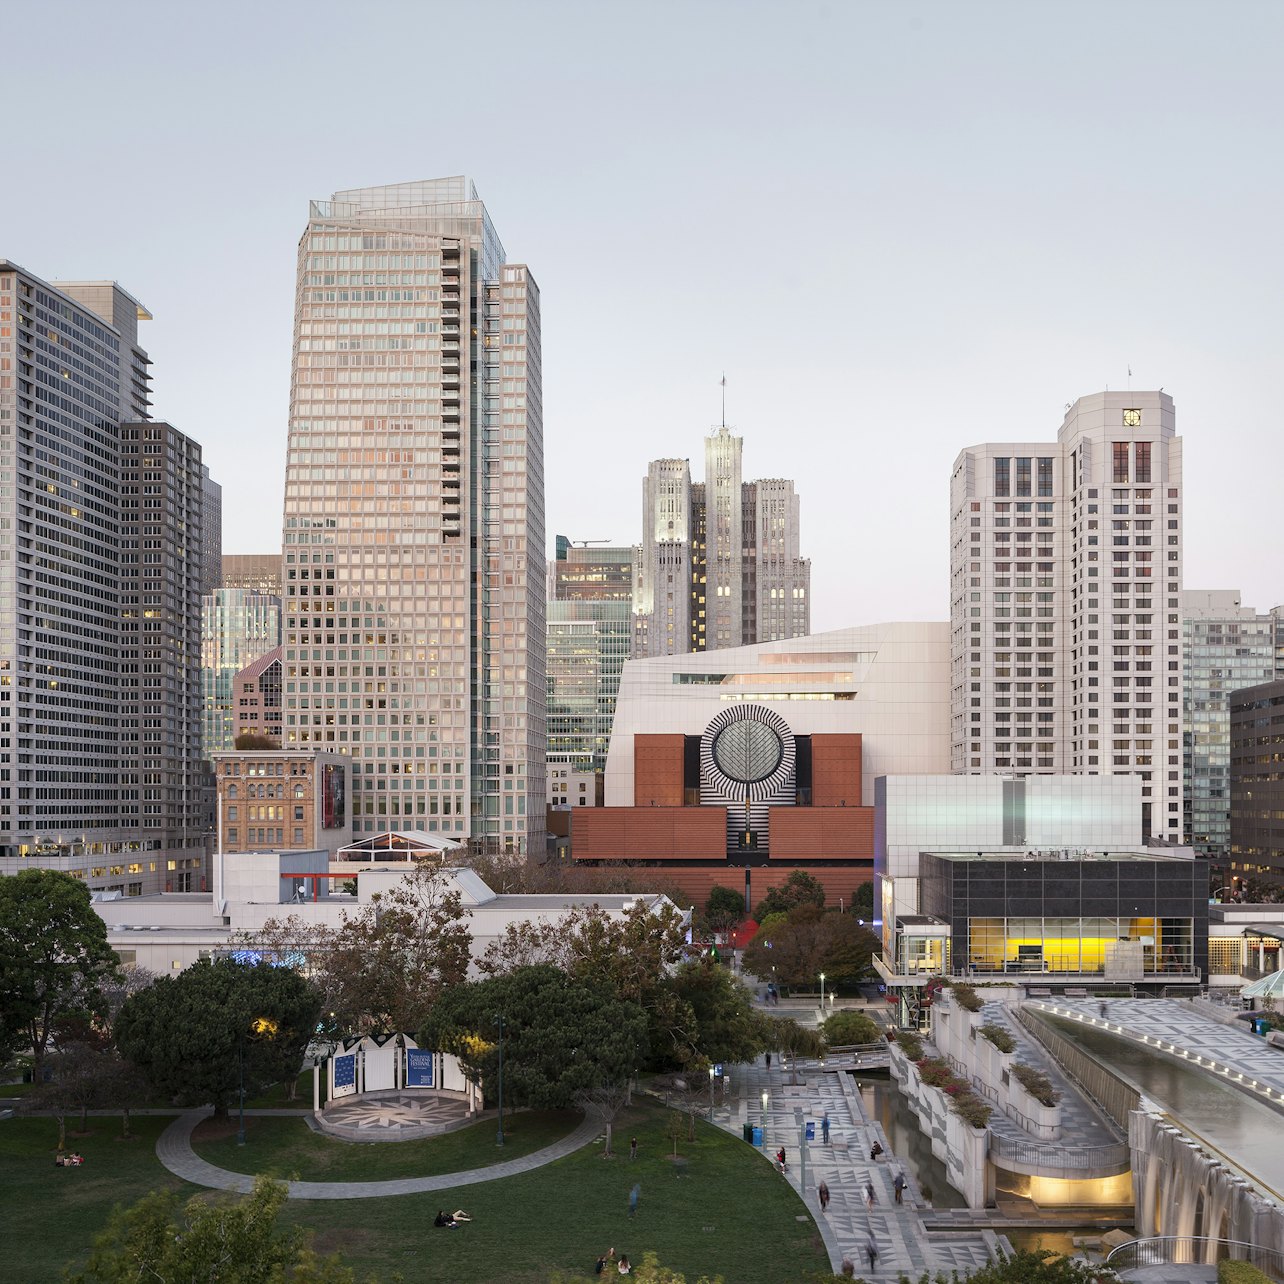 Museu de Arte Moderna de São Francisco (SFMOMA) - Acomodações em São Francisco